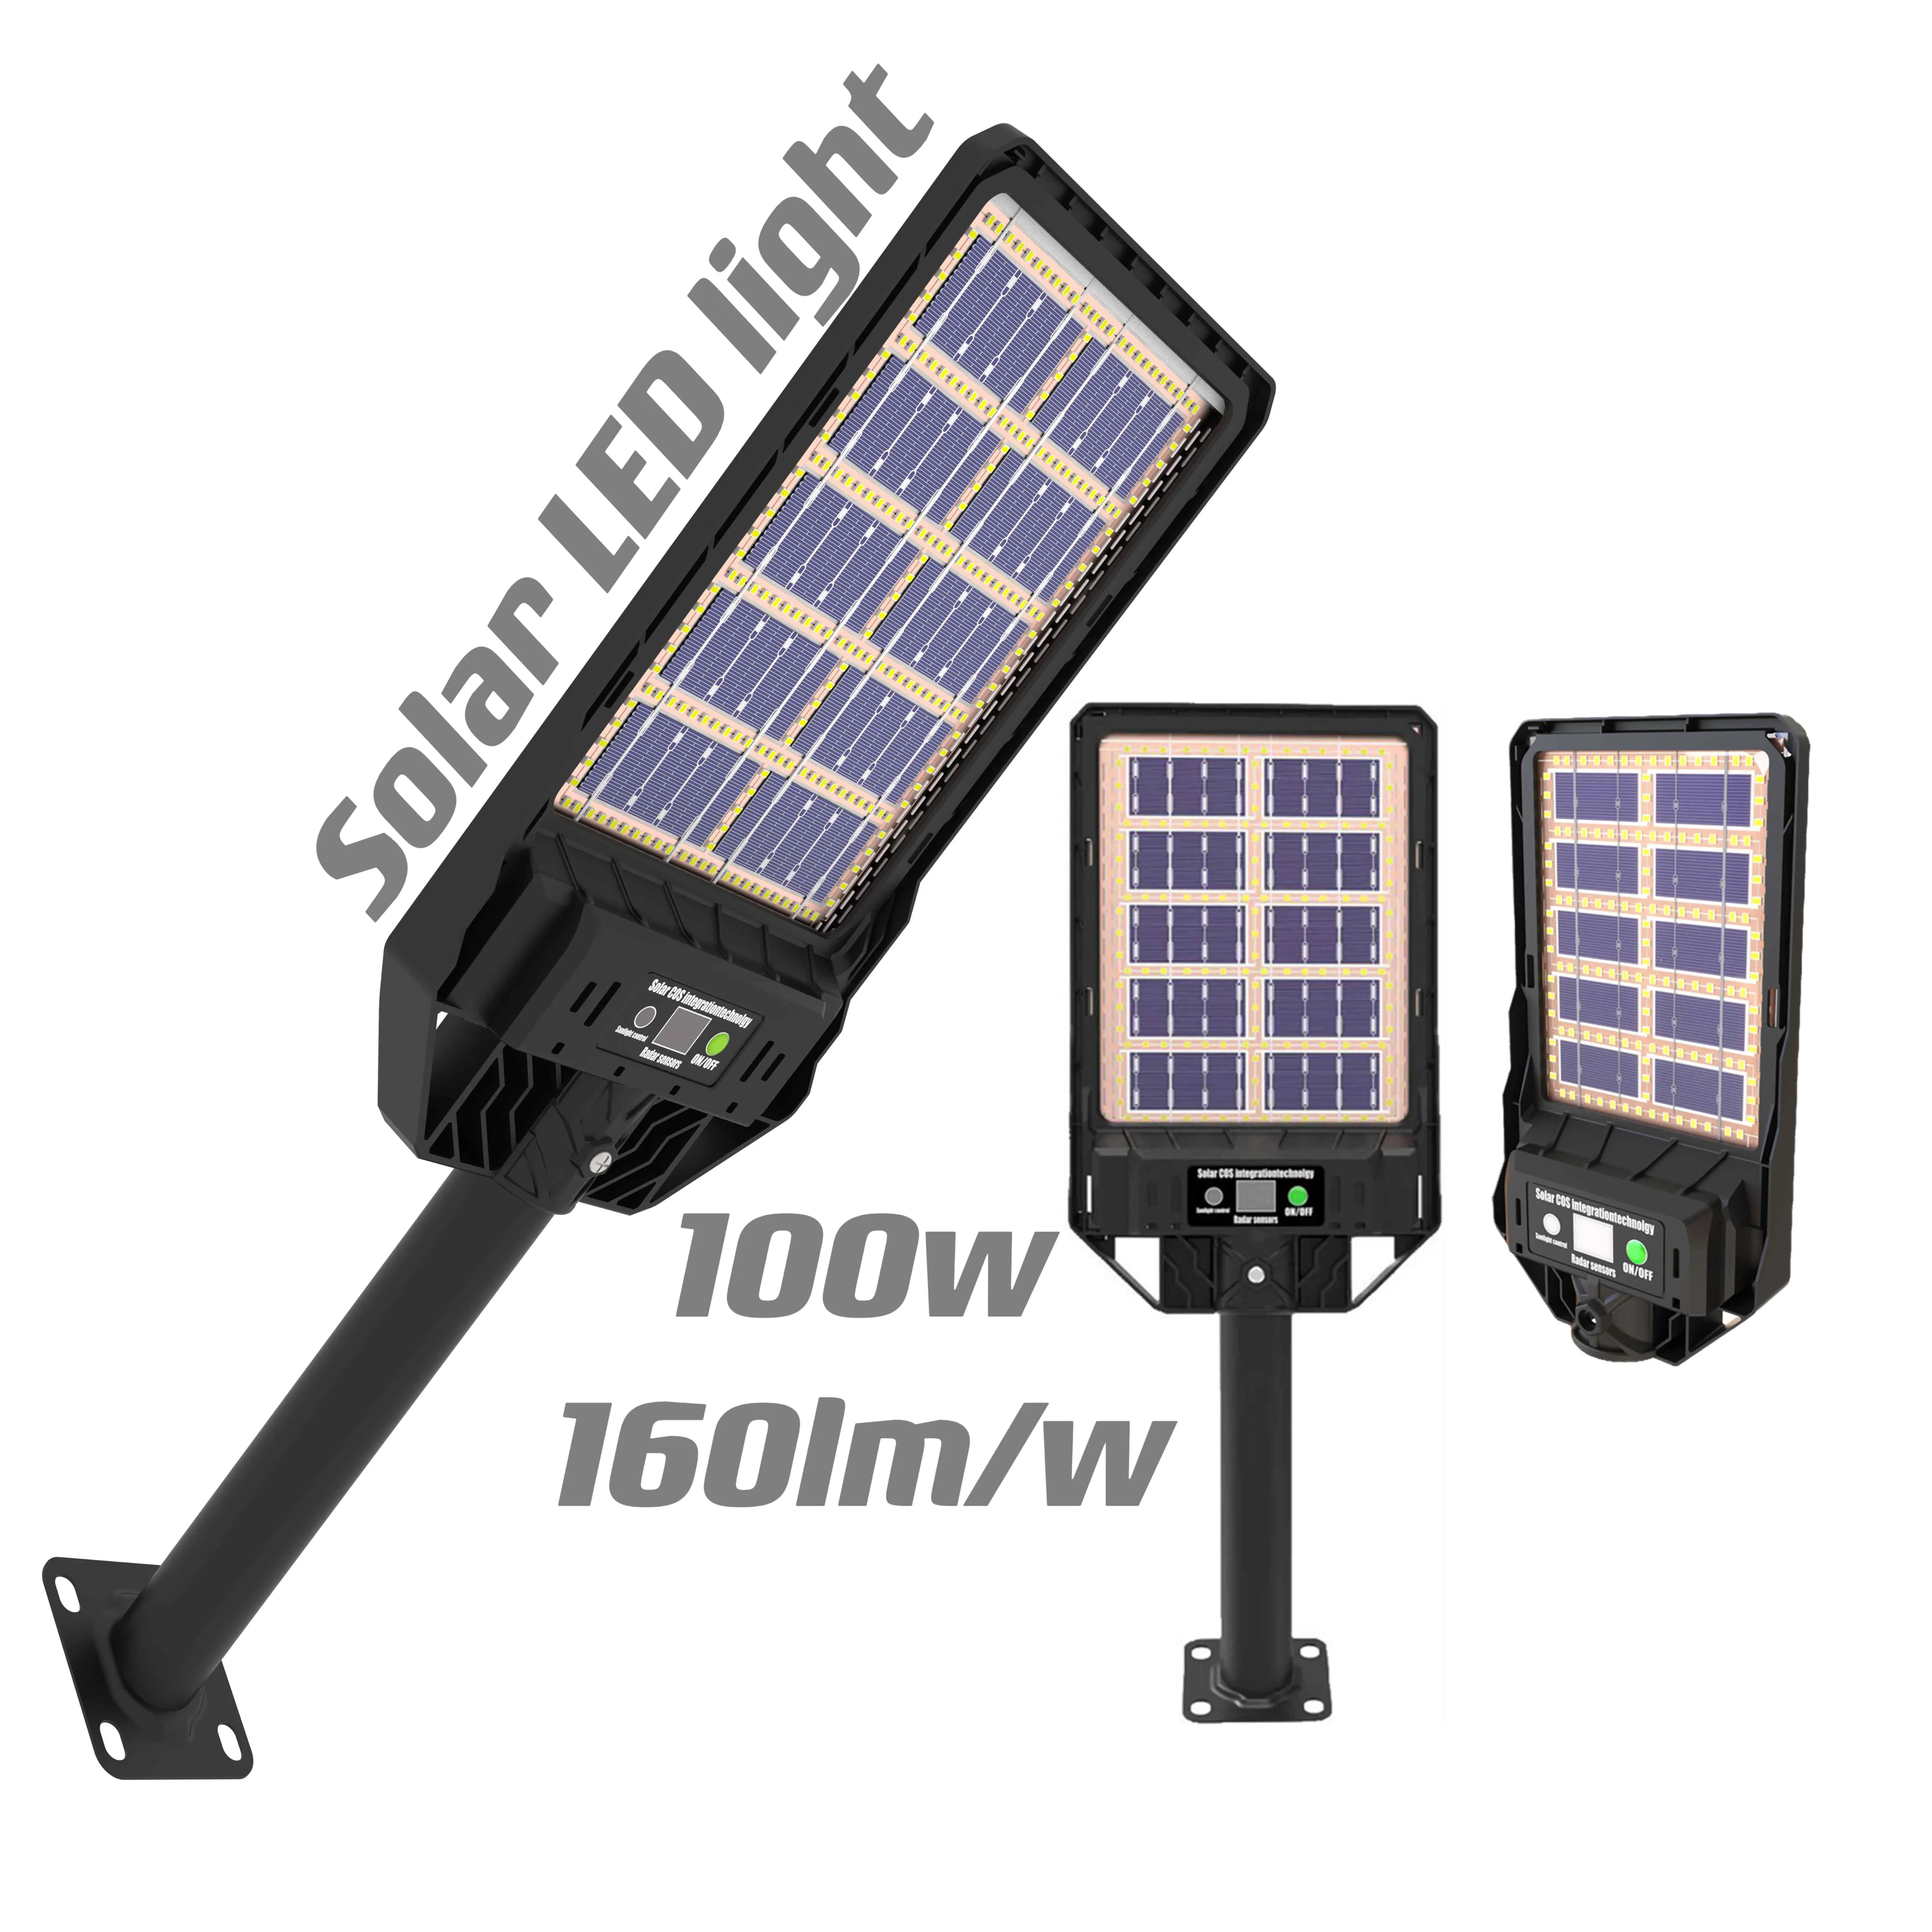 RTS 100w solar lights 50w 100w 200w 300w 400w led solar lighting street light